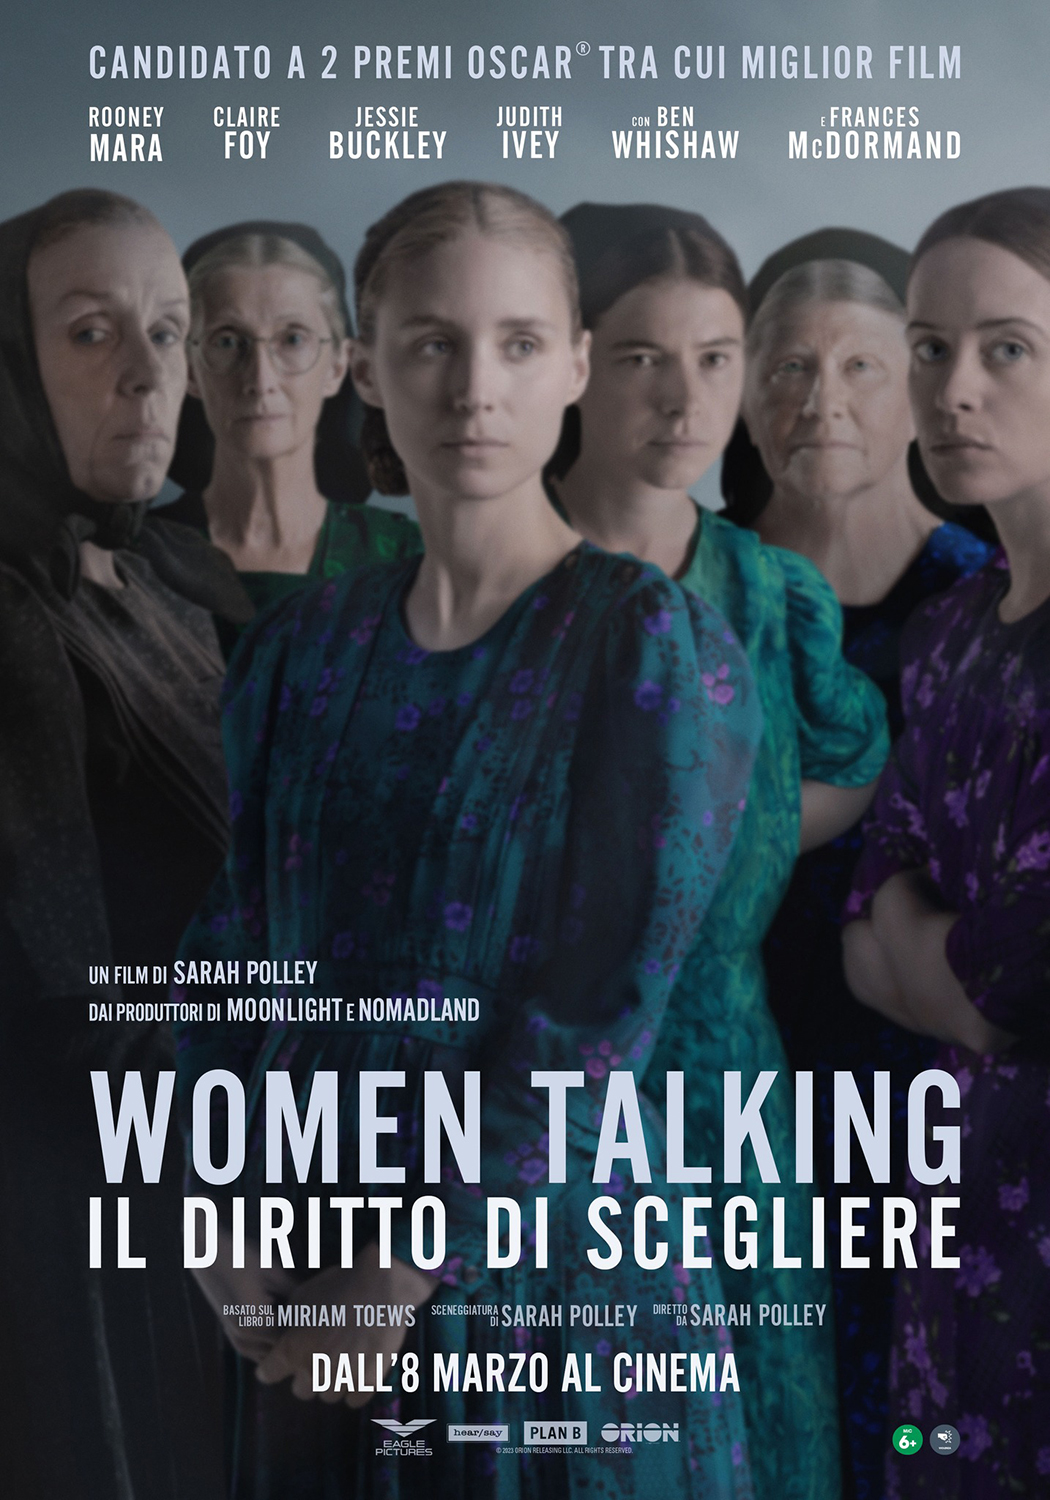 Women Talking – Il diritto di scegliere